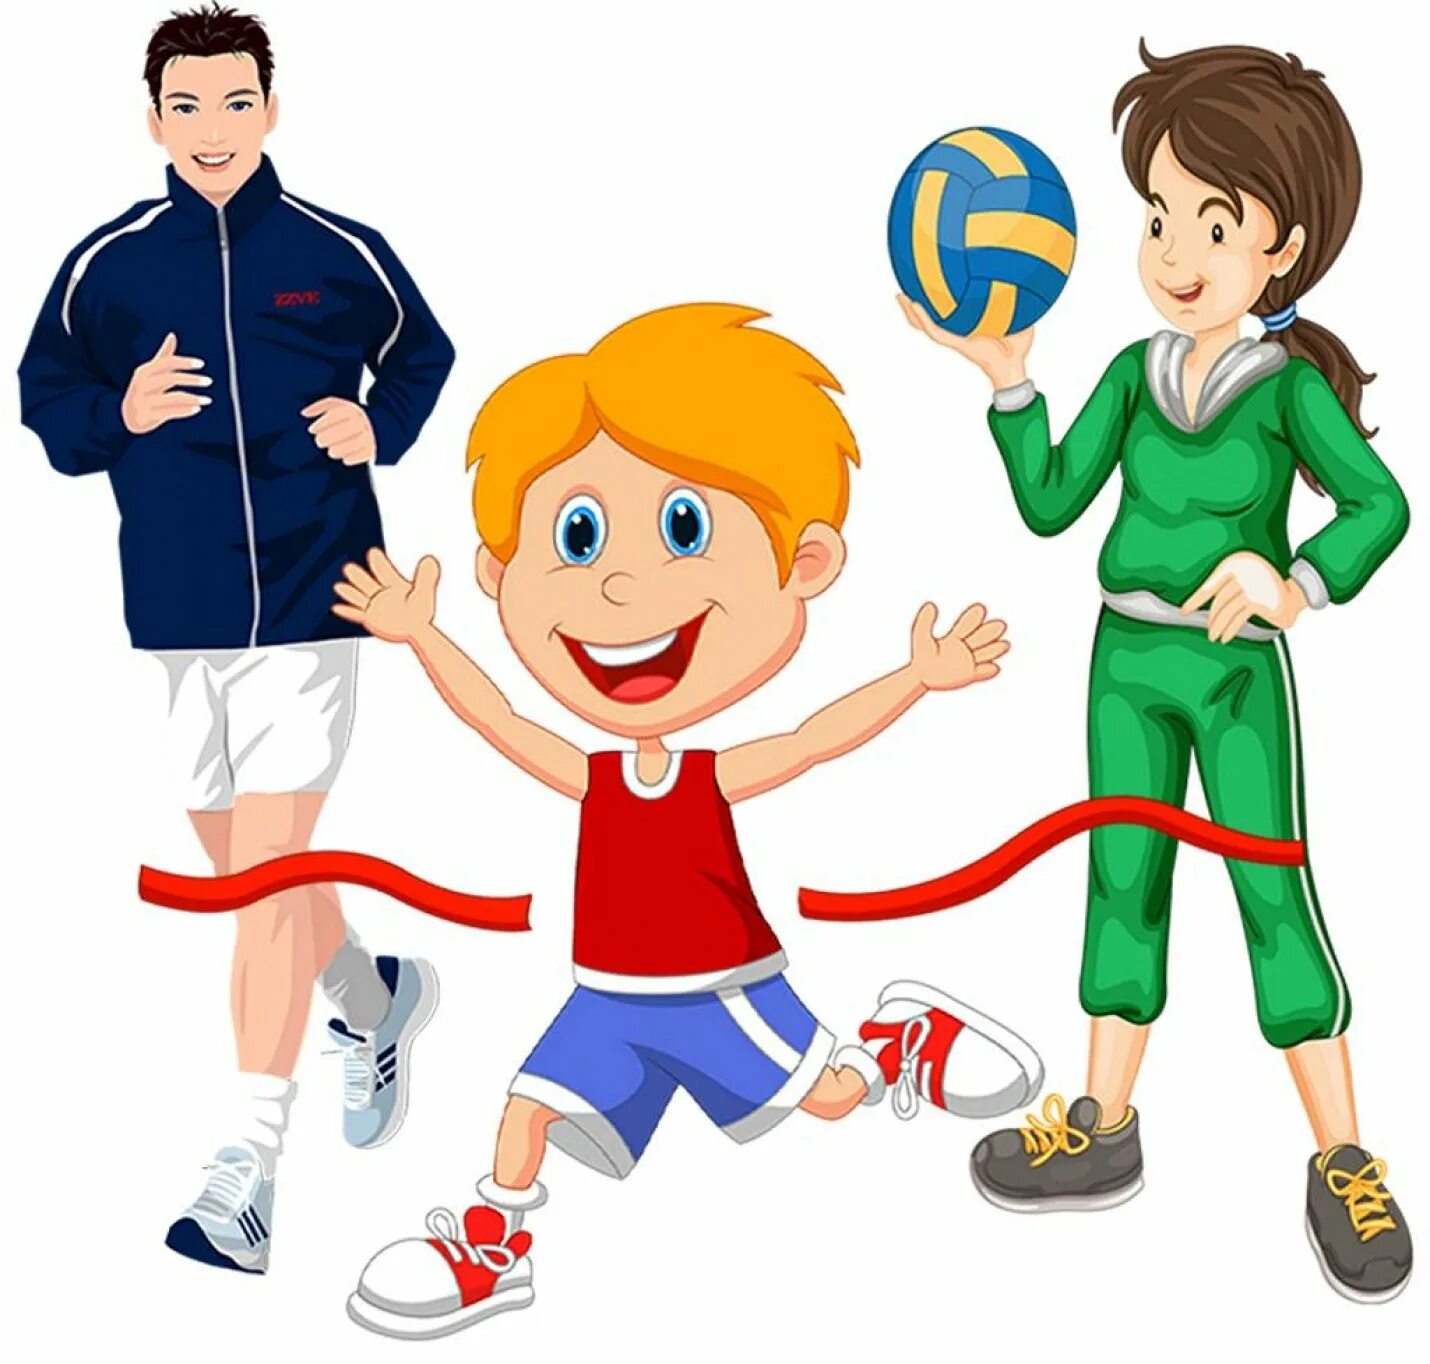 Физическая культура. Спортивные рисунки. Спортивные состязания для детей. Физкультура и спорт для детей.